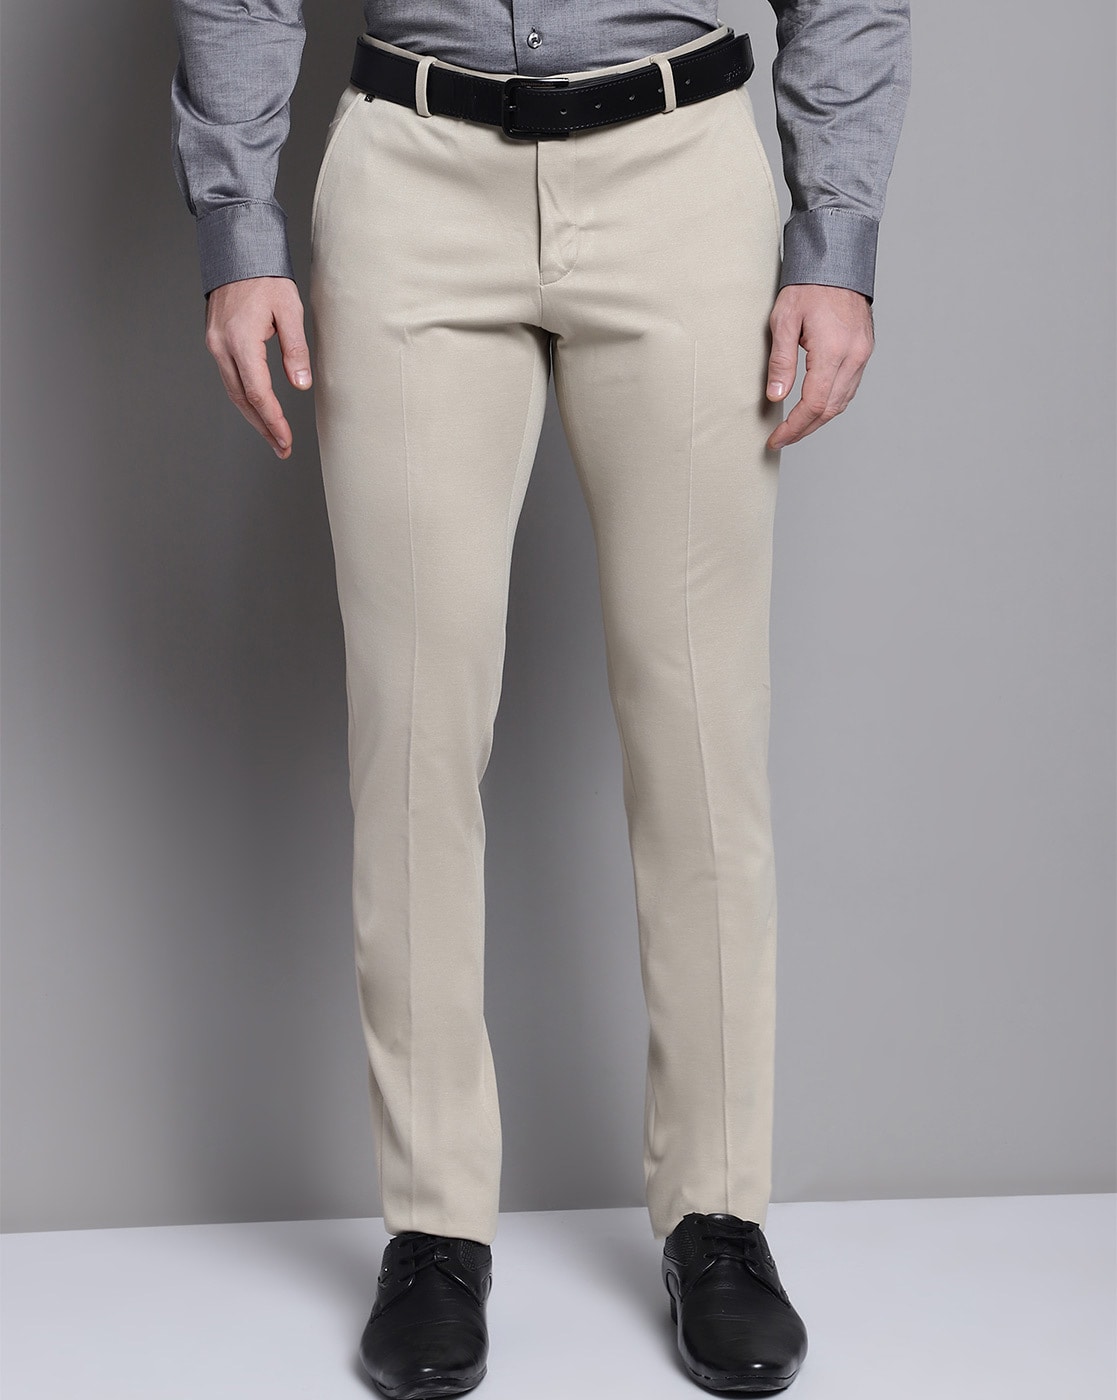 Buy Cantabil Men Navy Blue Formal Trouser online